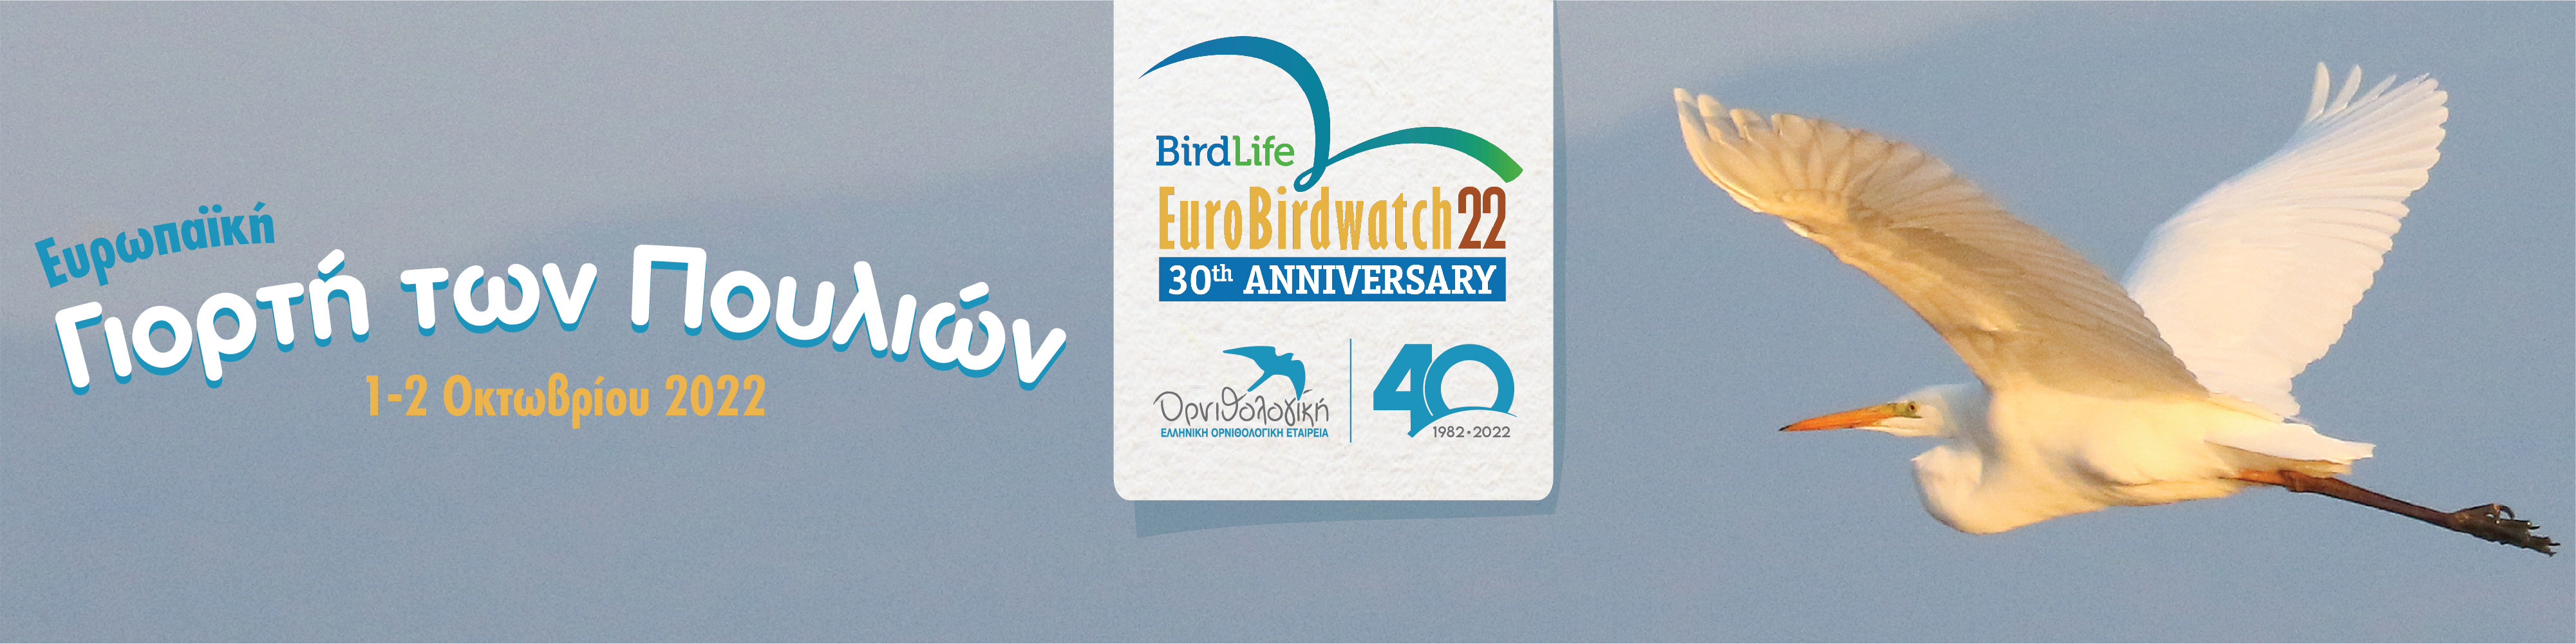 Ευρωπαϊκή Γιορτή των Πουλιών 2022: πρόσκληση διοργάνωσης εκδηλώσεων